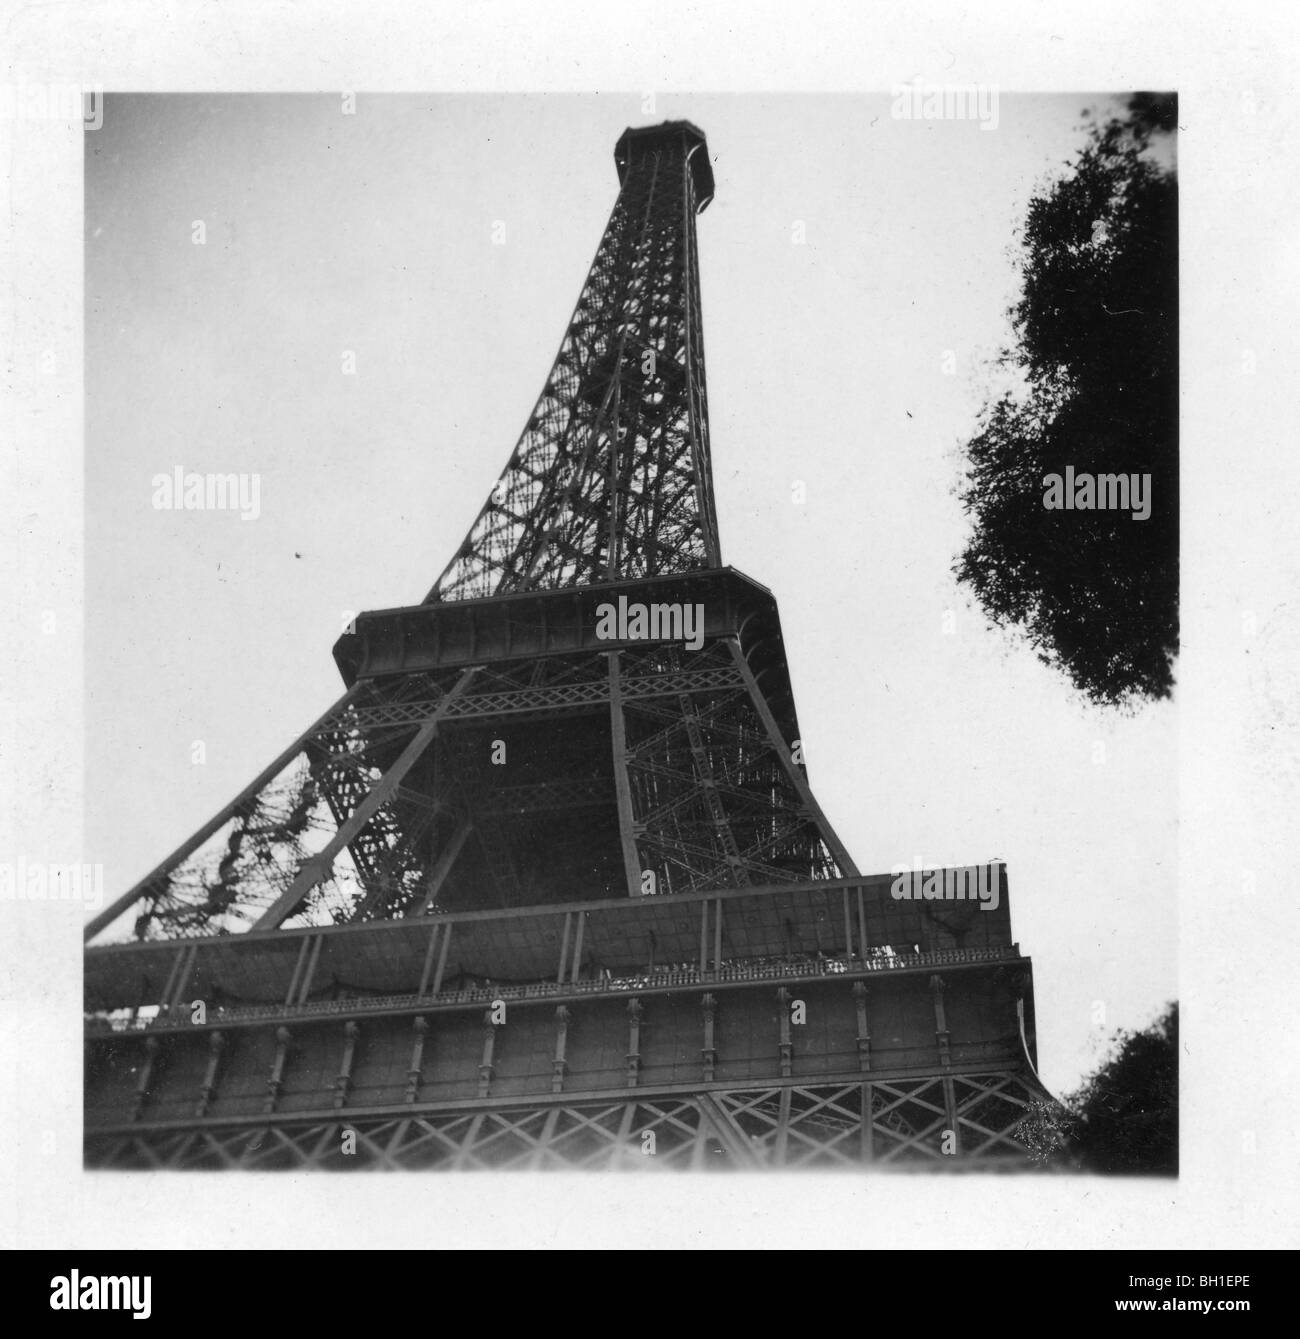 Der Eiffelturm in Paris, Frankreich nach der Amerikaner die Stadt im Jahre 1944 befreit. Dem zweiten Weltkrieg Denkmal Architektur Europa Französisch Stockfoto